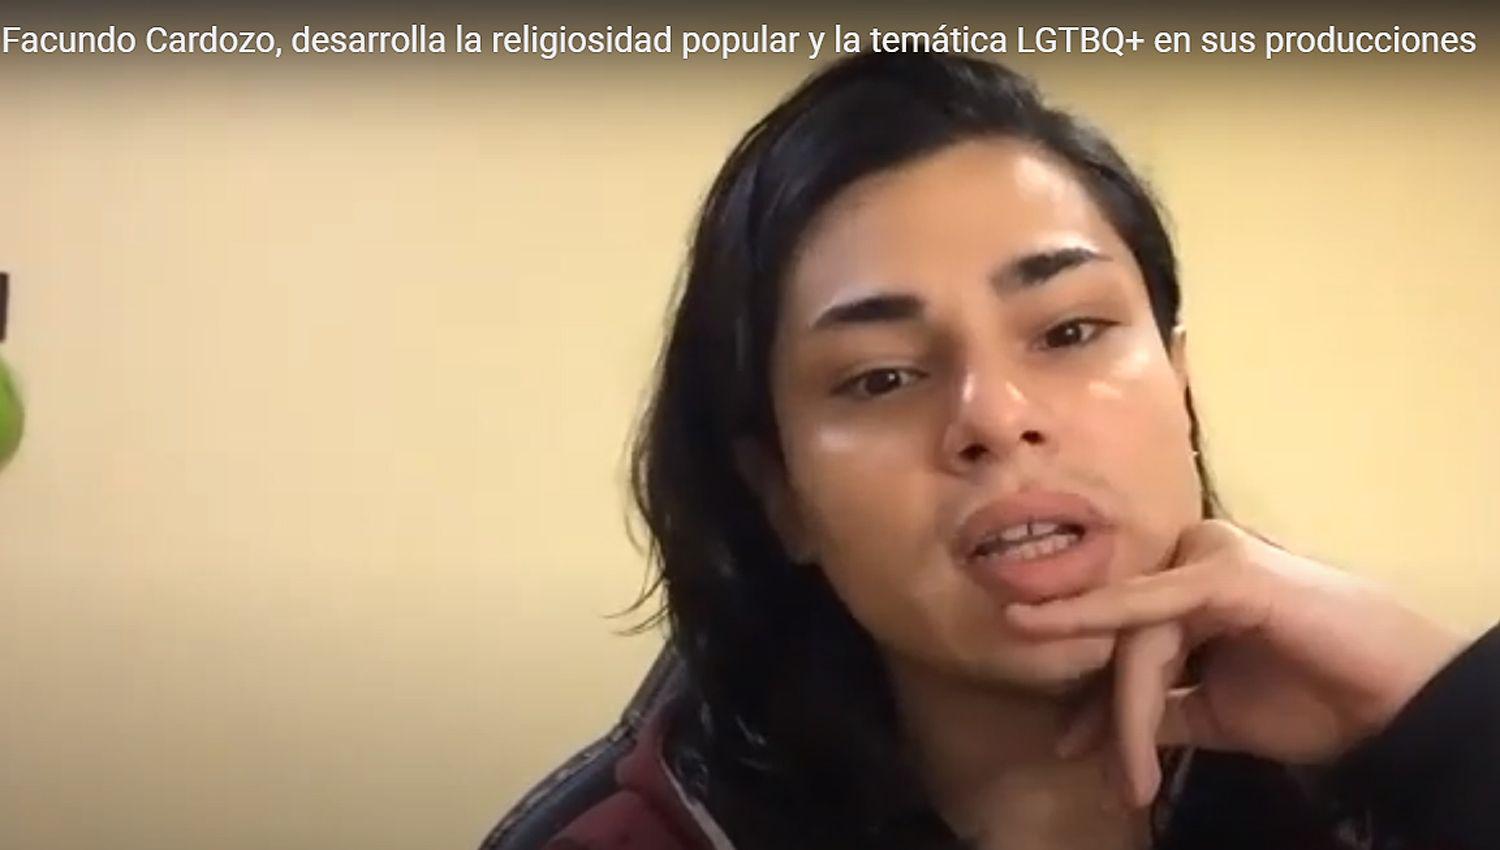 Facundo Cardozo cineasta santiaguentildeo desarrolla la religiosidad popular y la temaacutetica LGTBQ en sus producciones